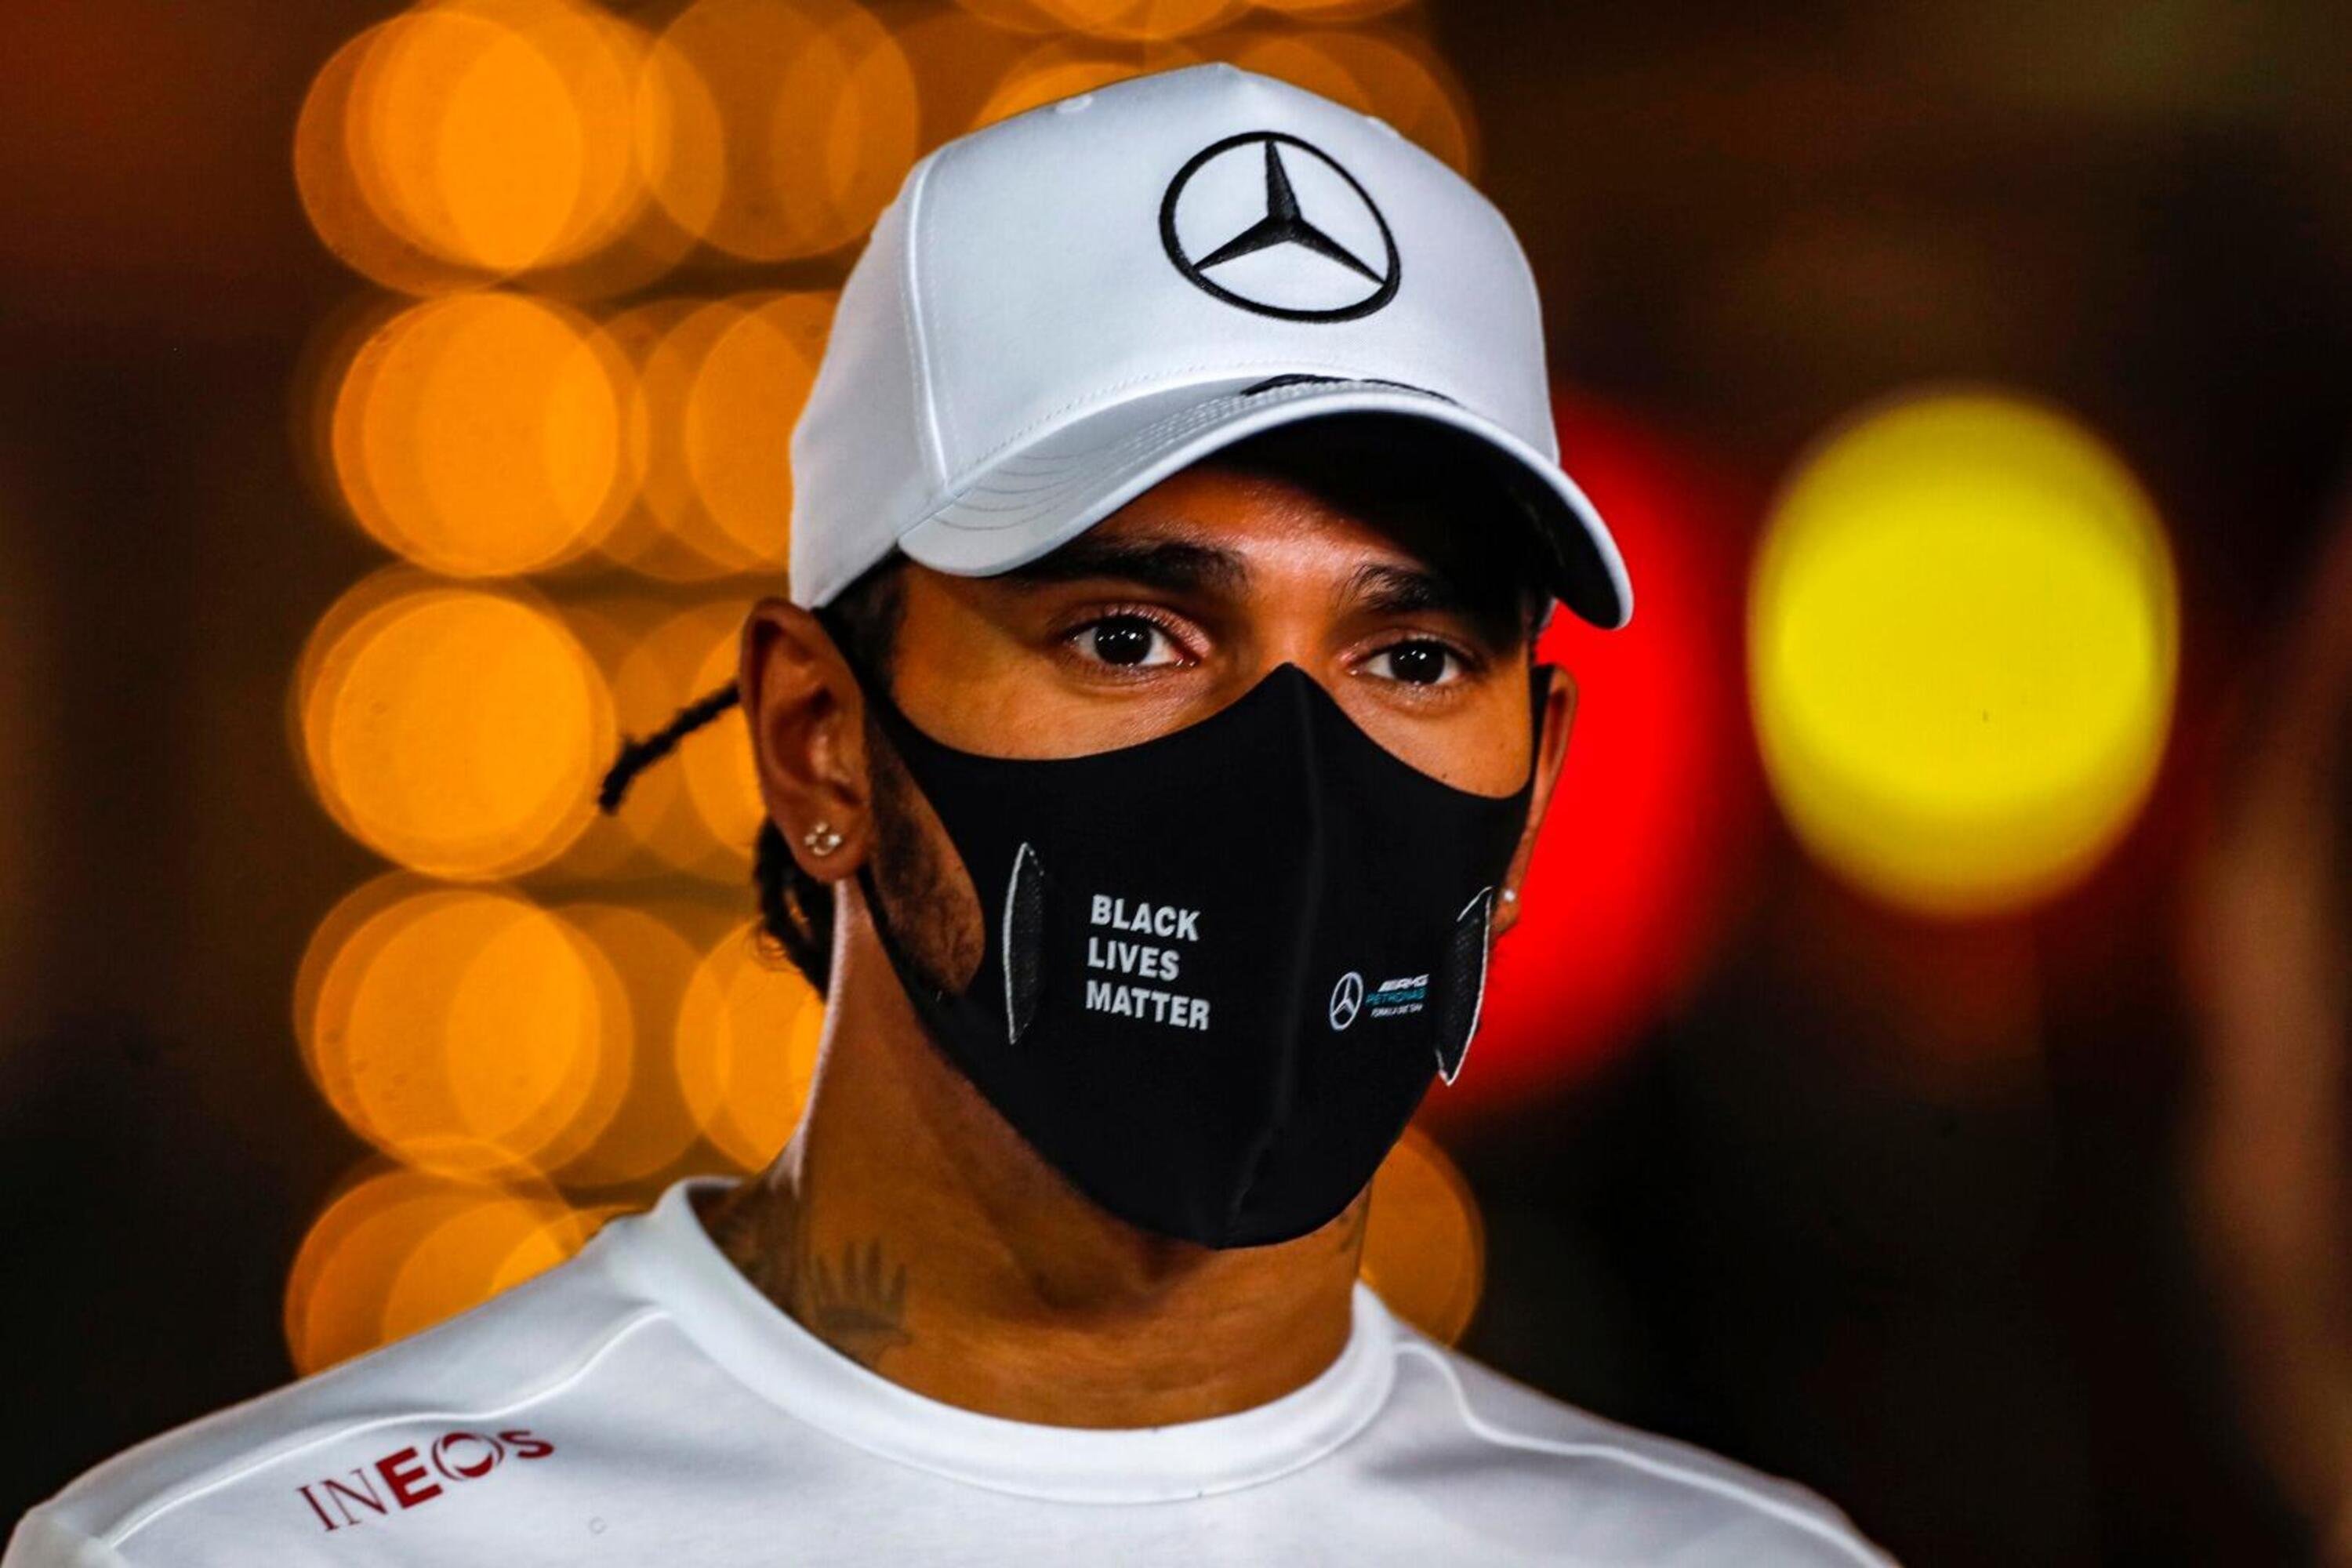 F1, GP Bahrain 2020: Hamilton, elogio alla sicurezza